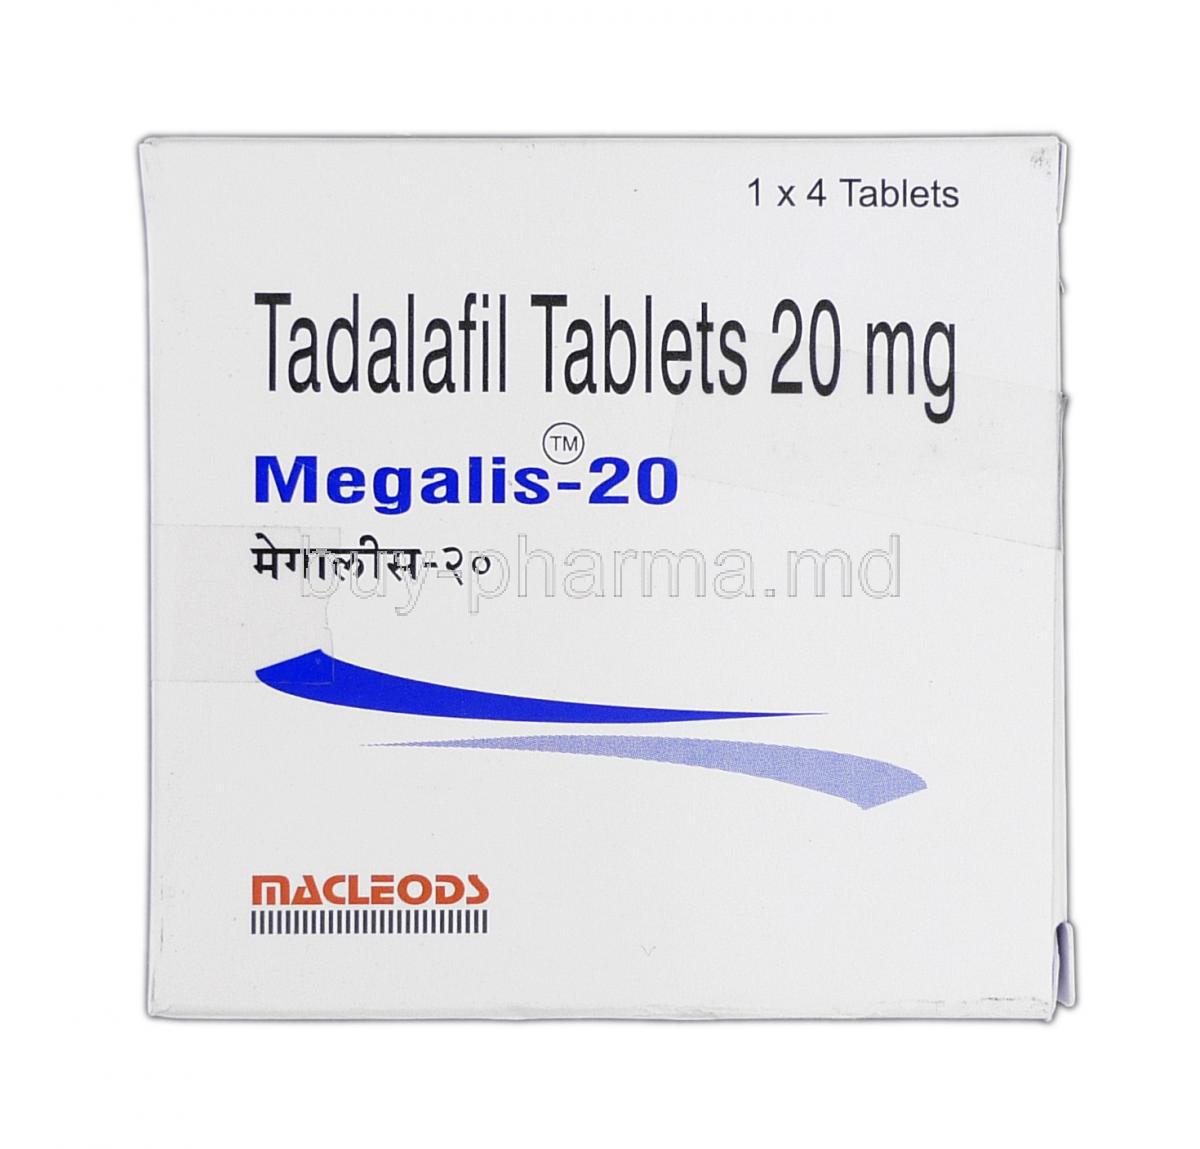 Megalis-20, Generic Cialis, Tadalafil, 20 mg, Box